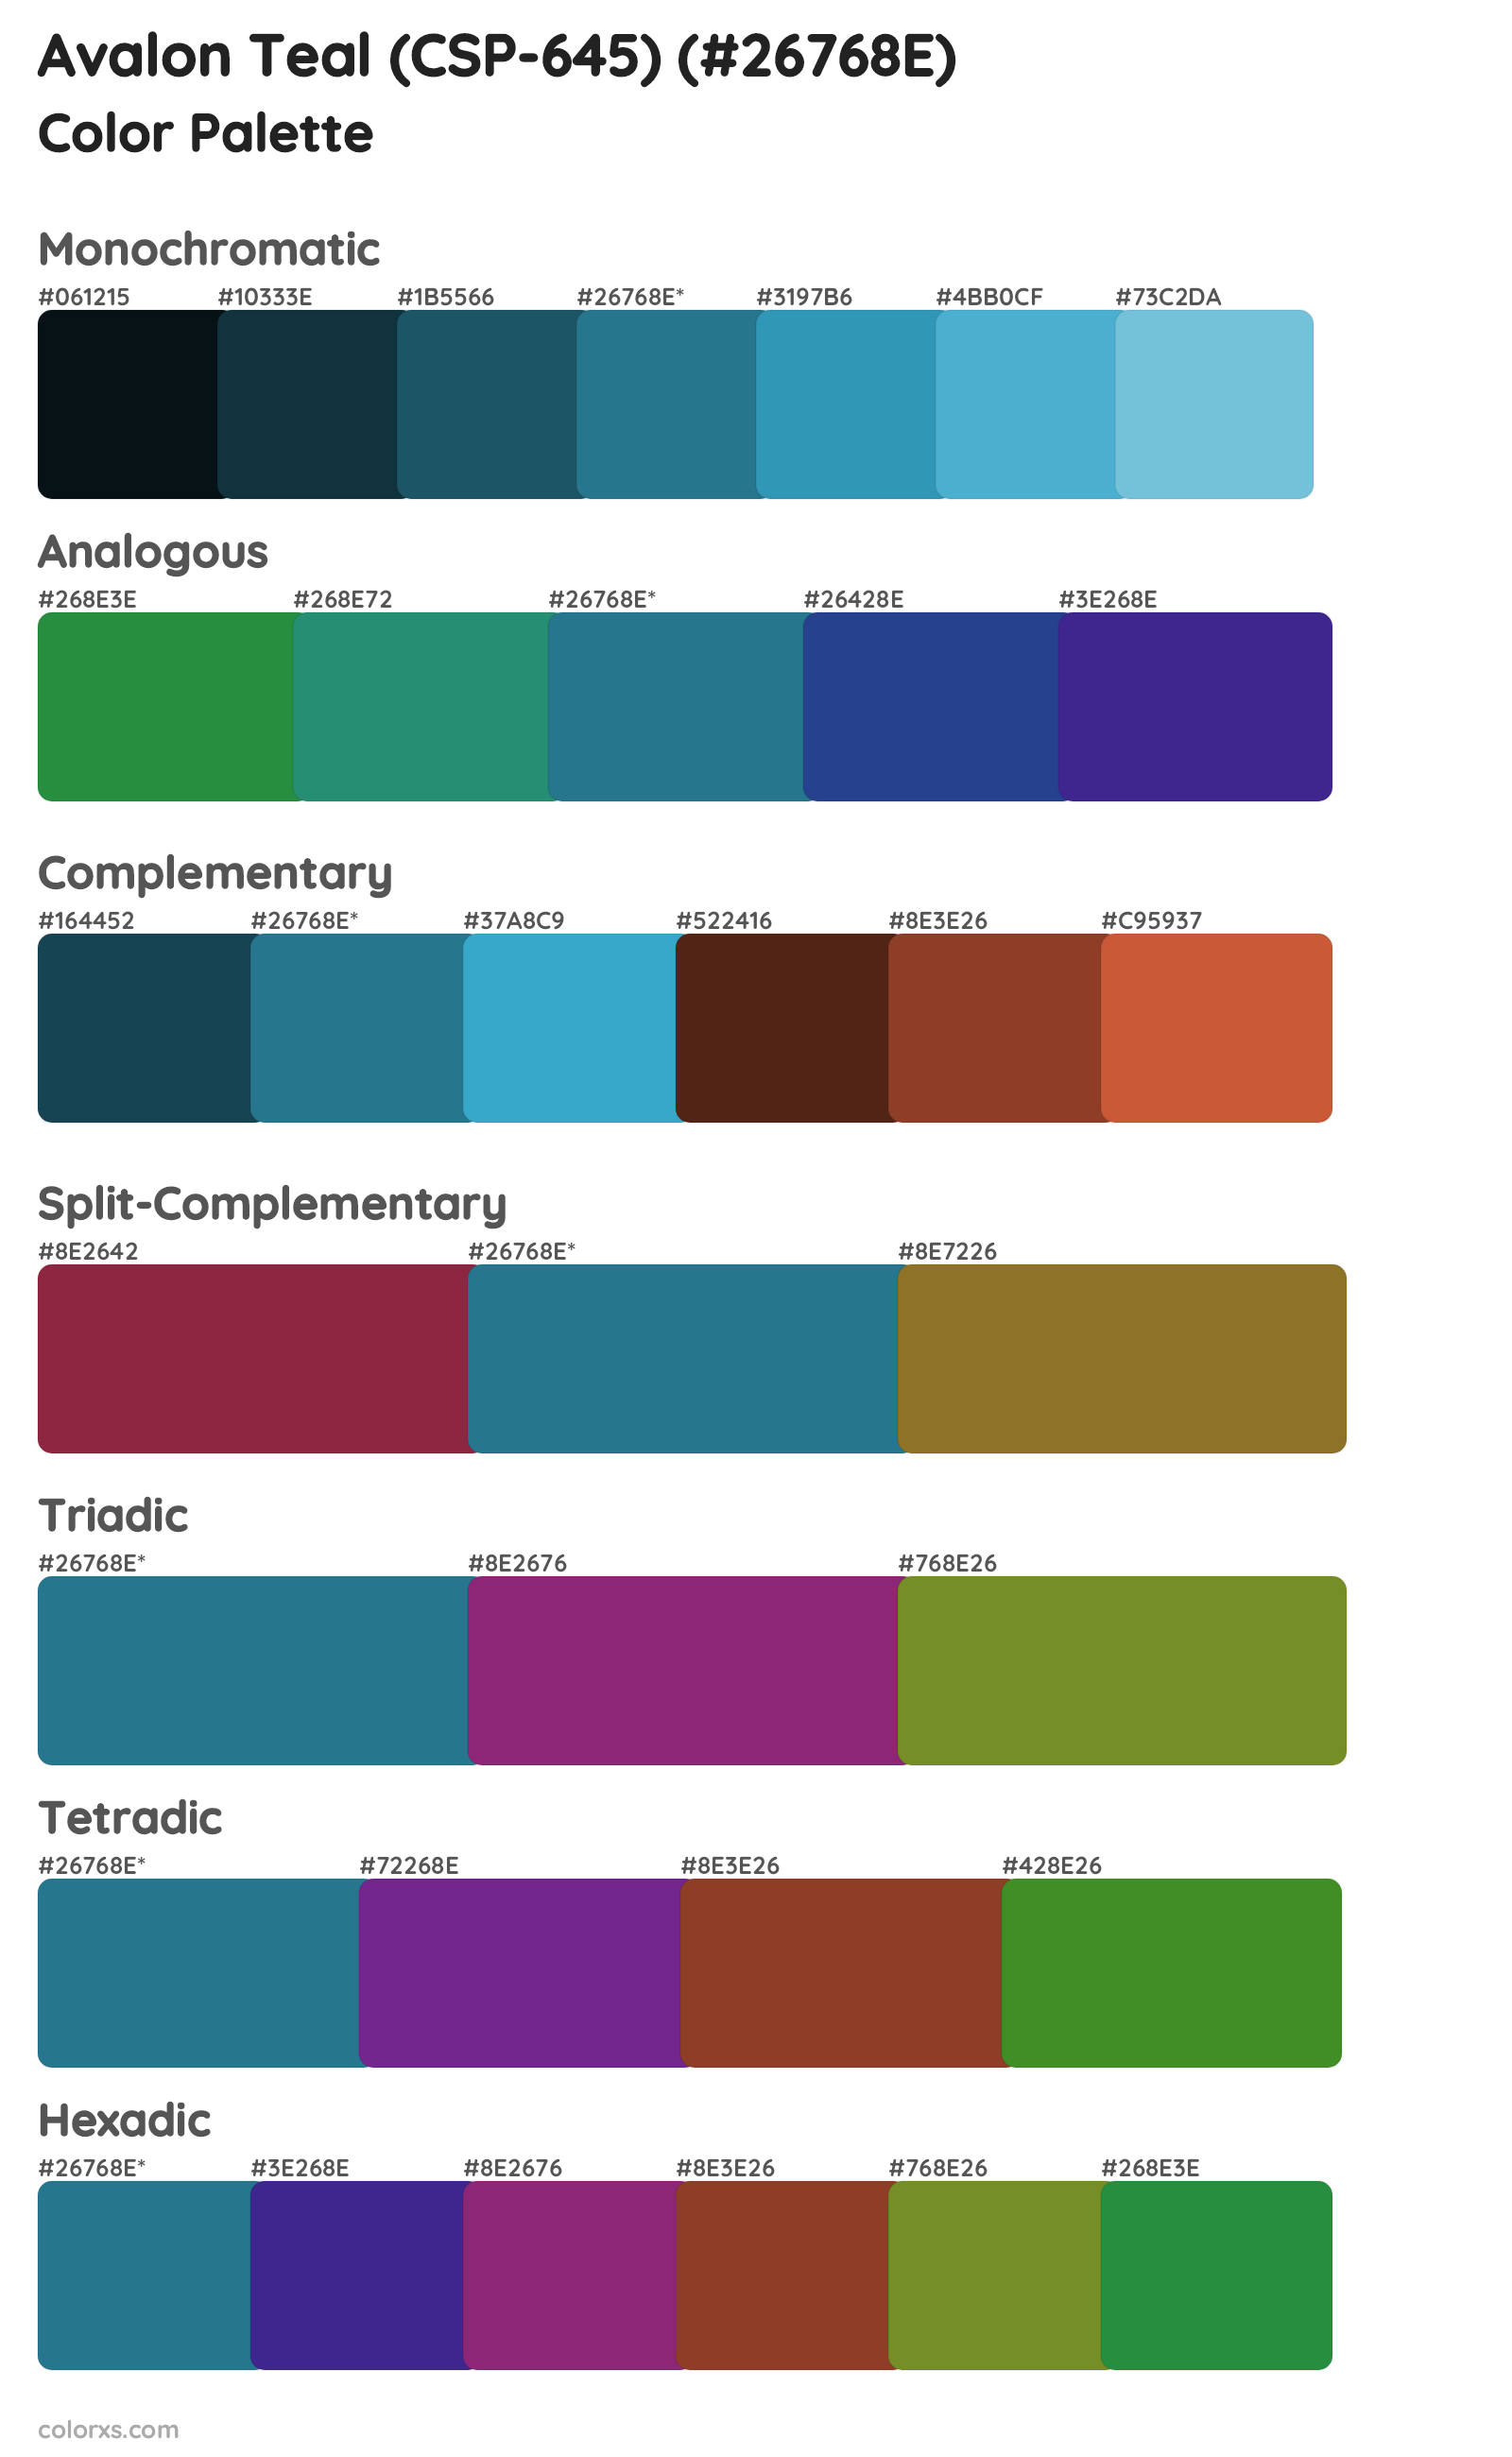 Avalon Teal (CSP-645) Color Scheme Palettes